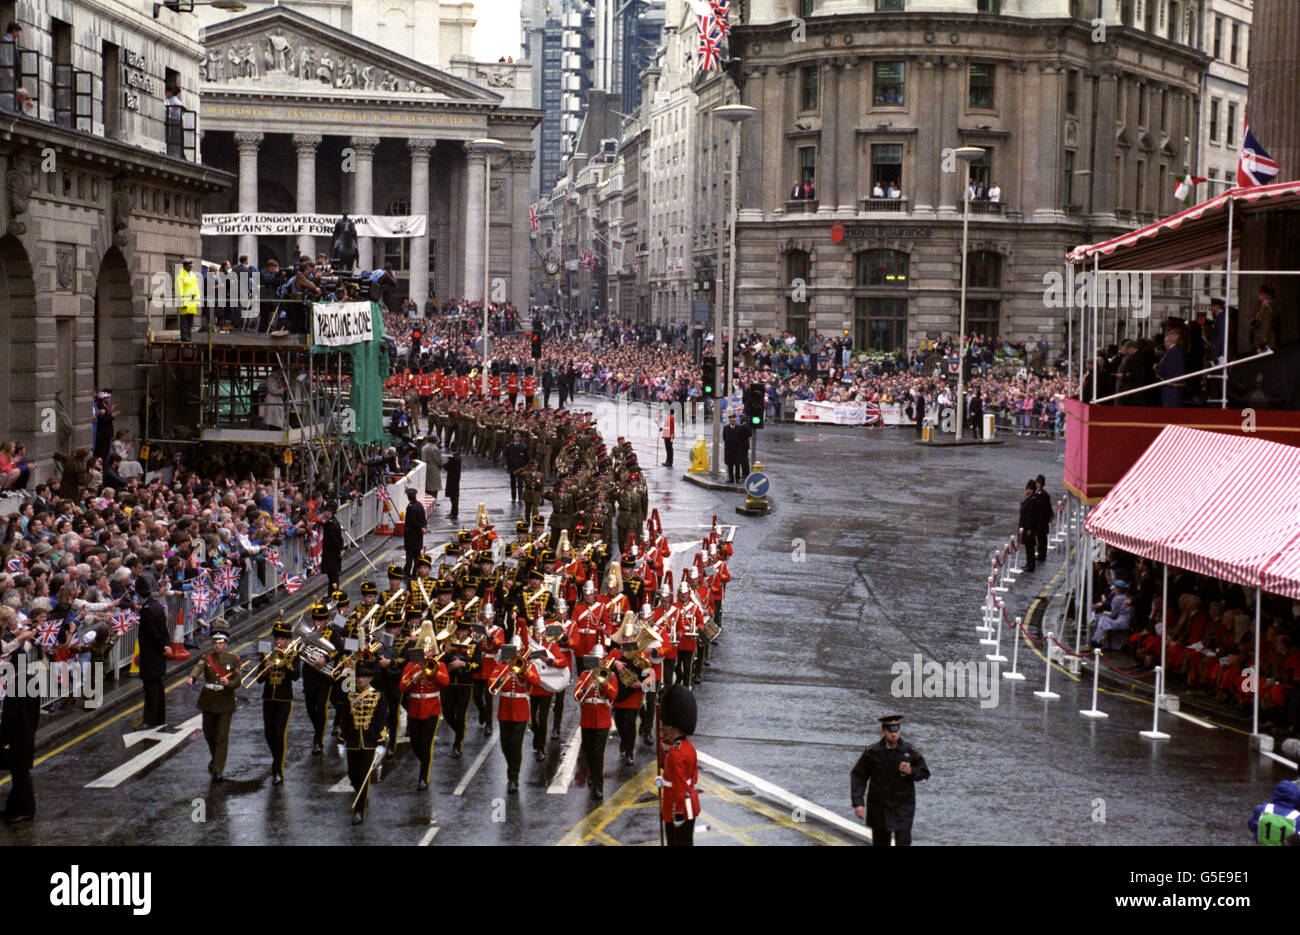 Una sezione della Gulf War Victory Parade, che include una banda di cavalleria, passa di fronte alla Guildhall (a destra) nella città di Londra. Foto Stock